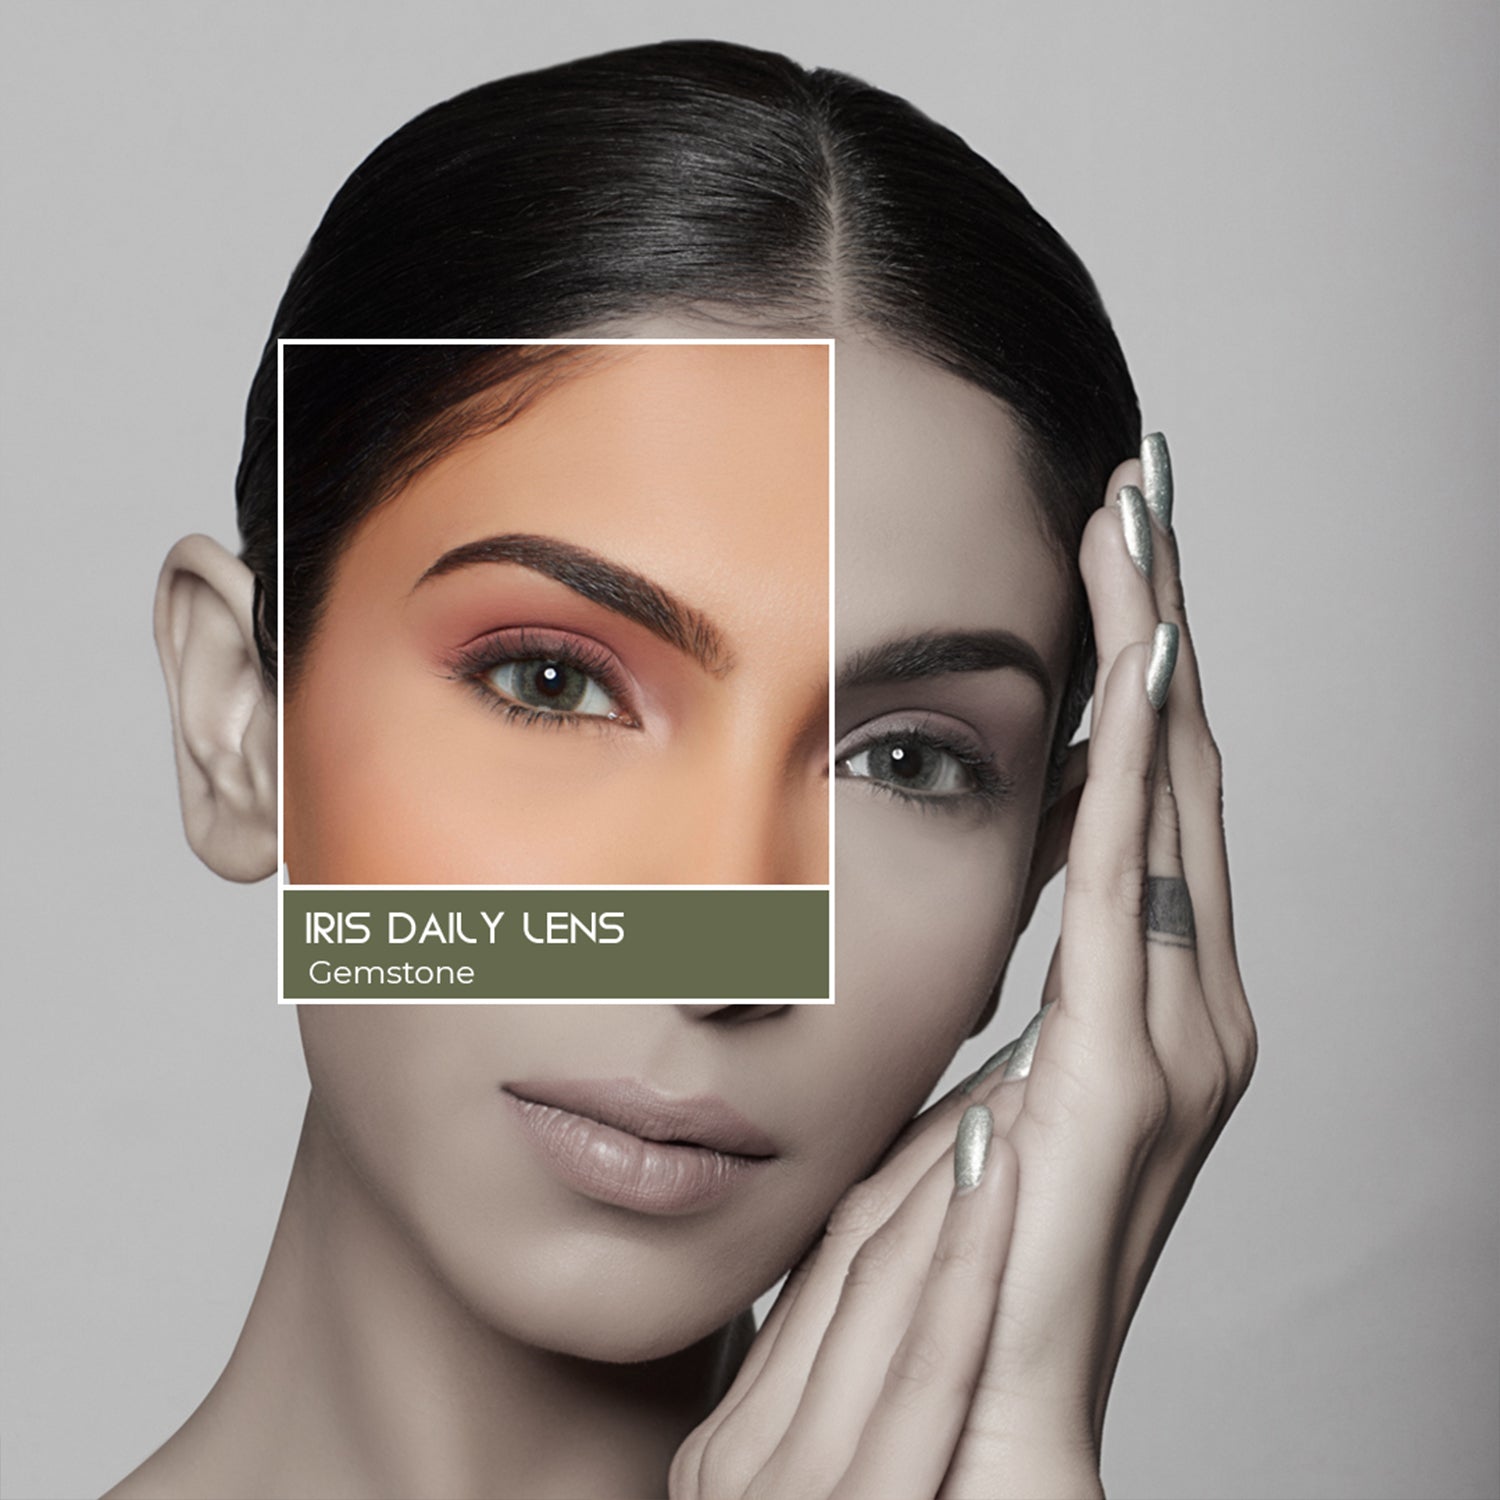 PAC Cosmetics IRIS Premium Contact Lenses (5 Pairs) #Color_Gemstone